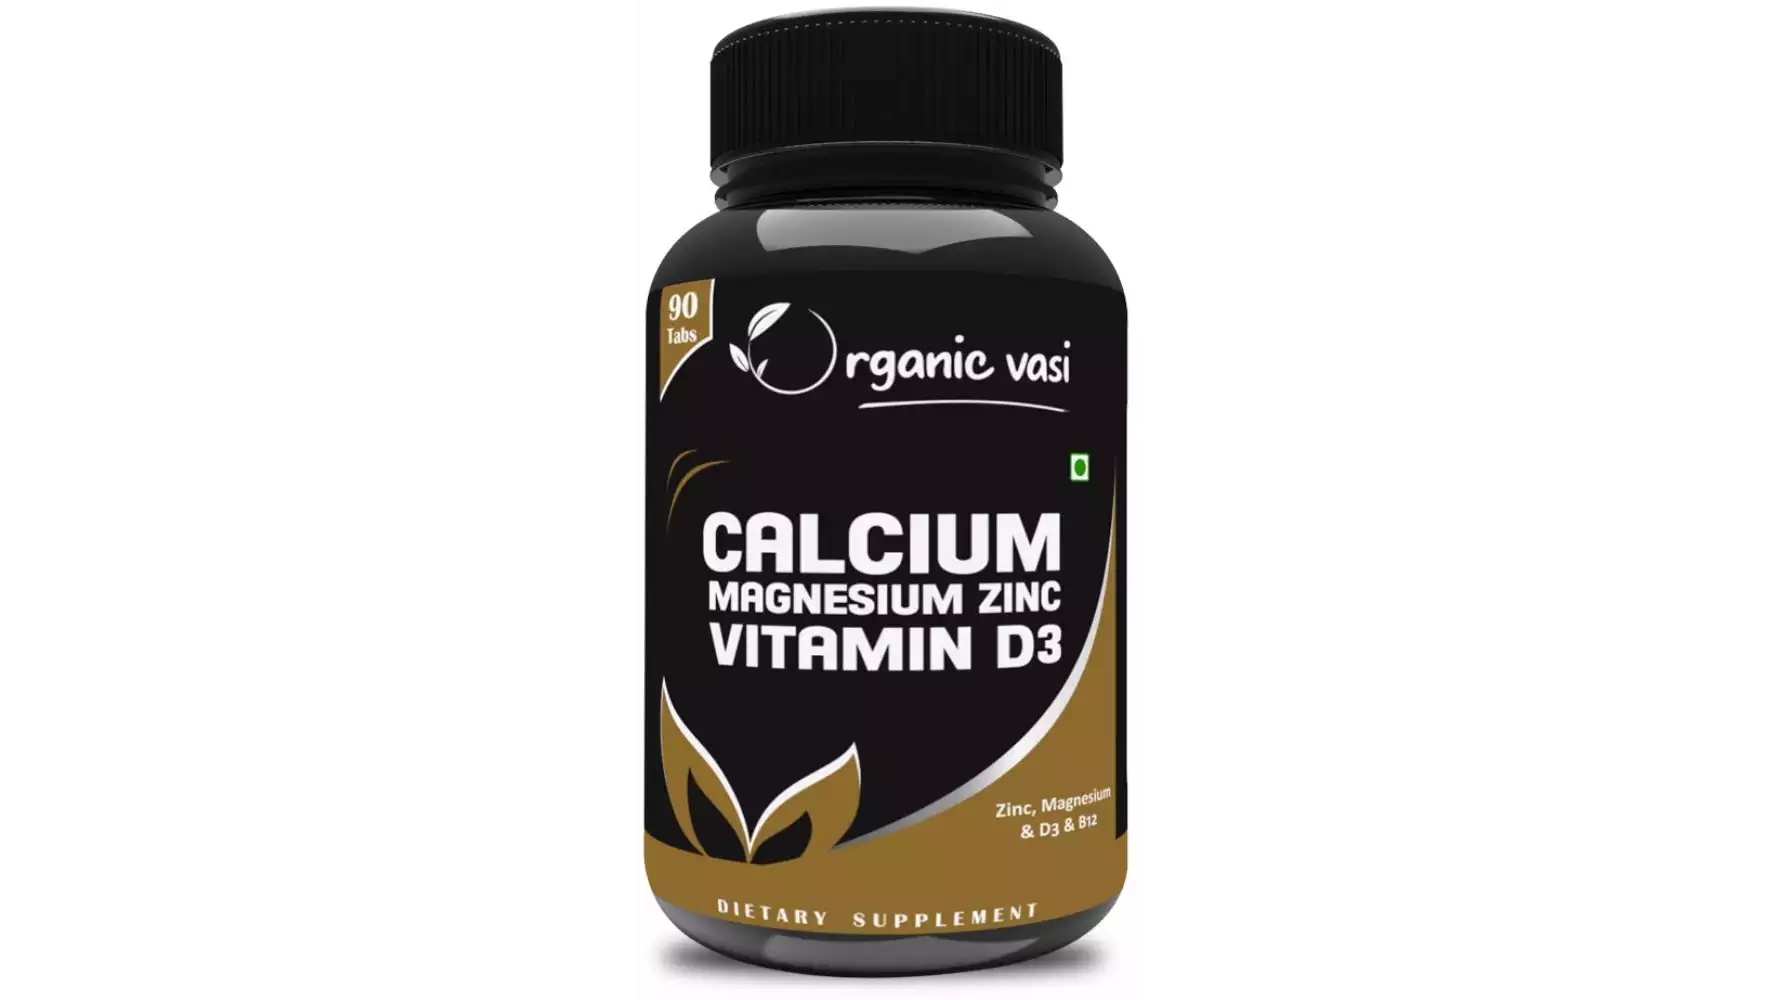 Organic Vasi Calcium Magnesium Zinc Vitamin D3 Supplement (90caps)